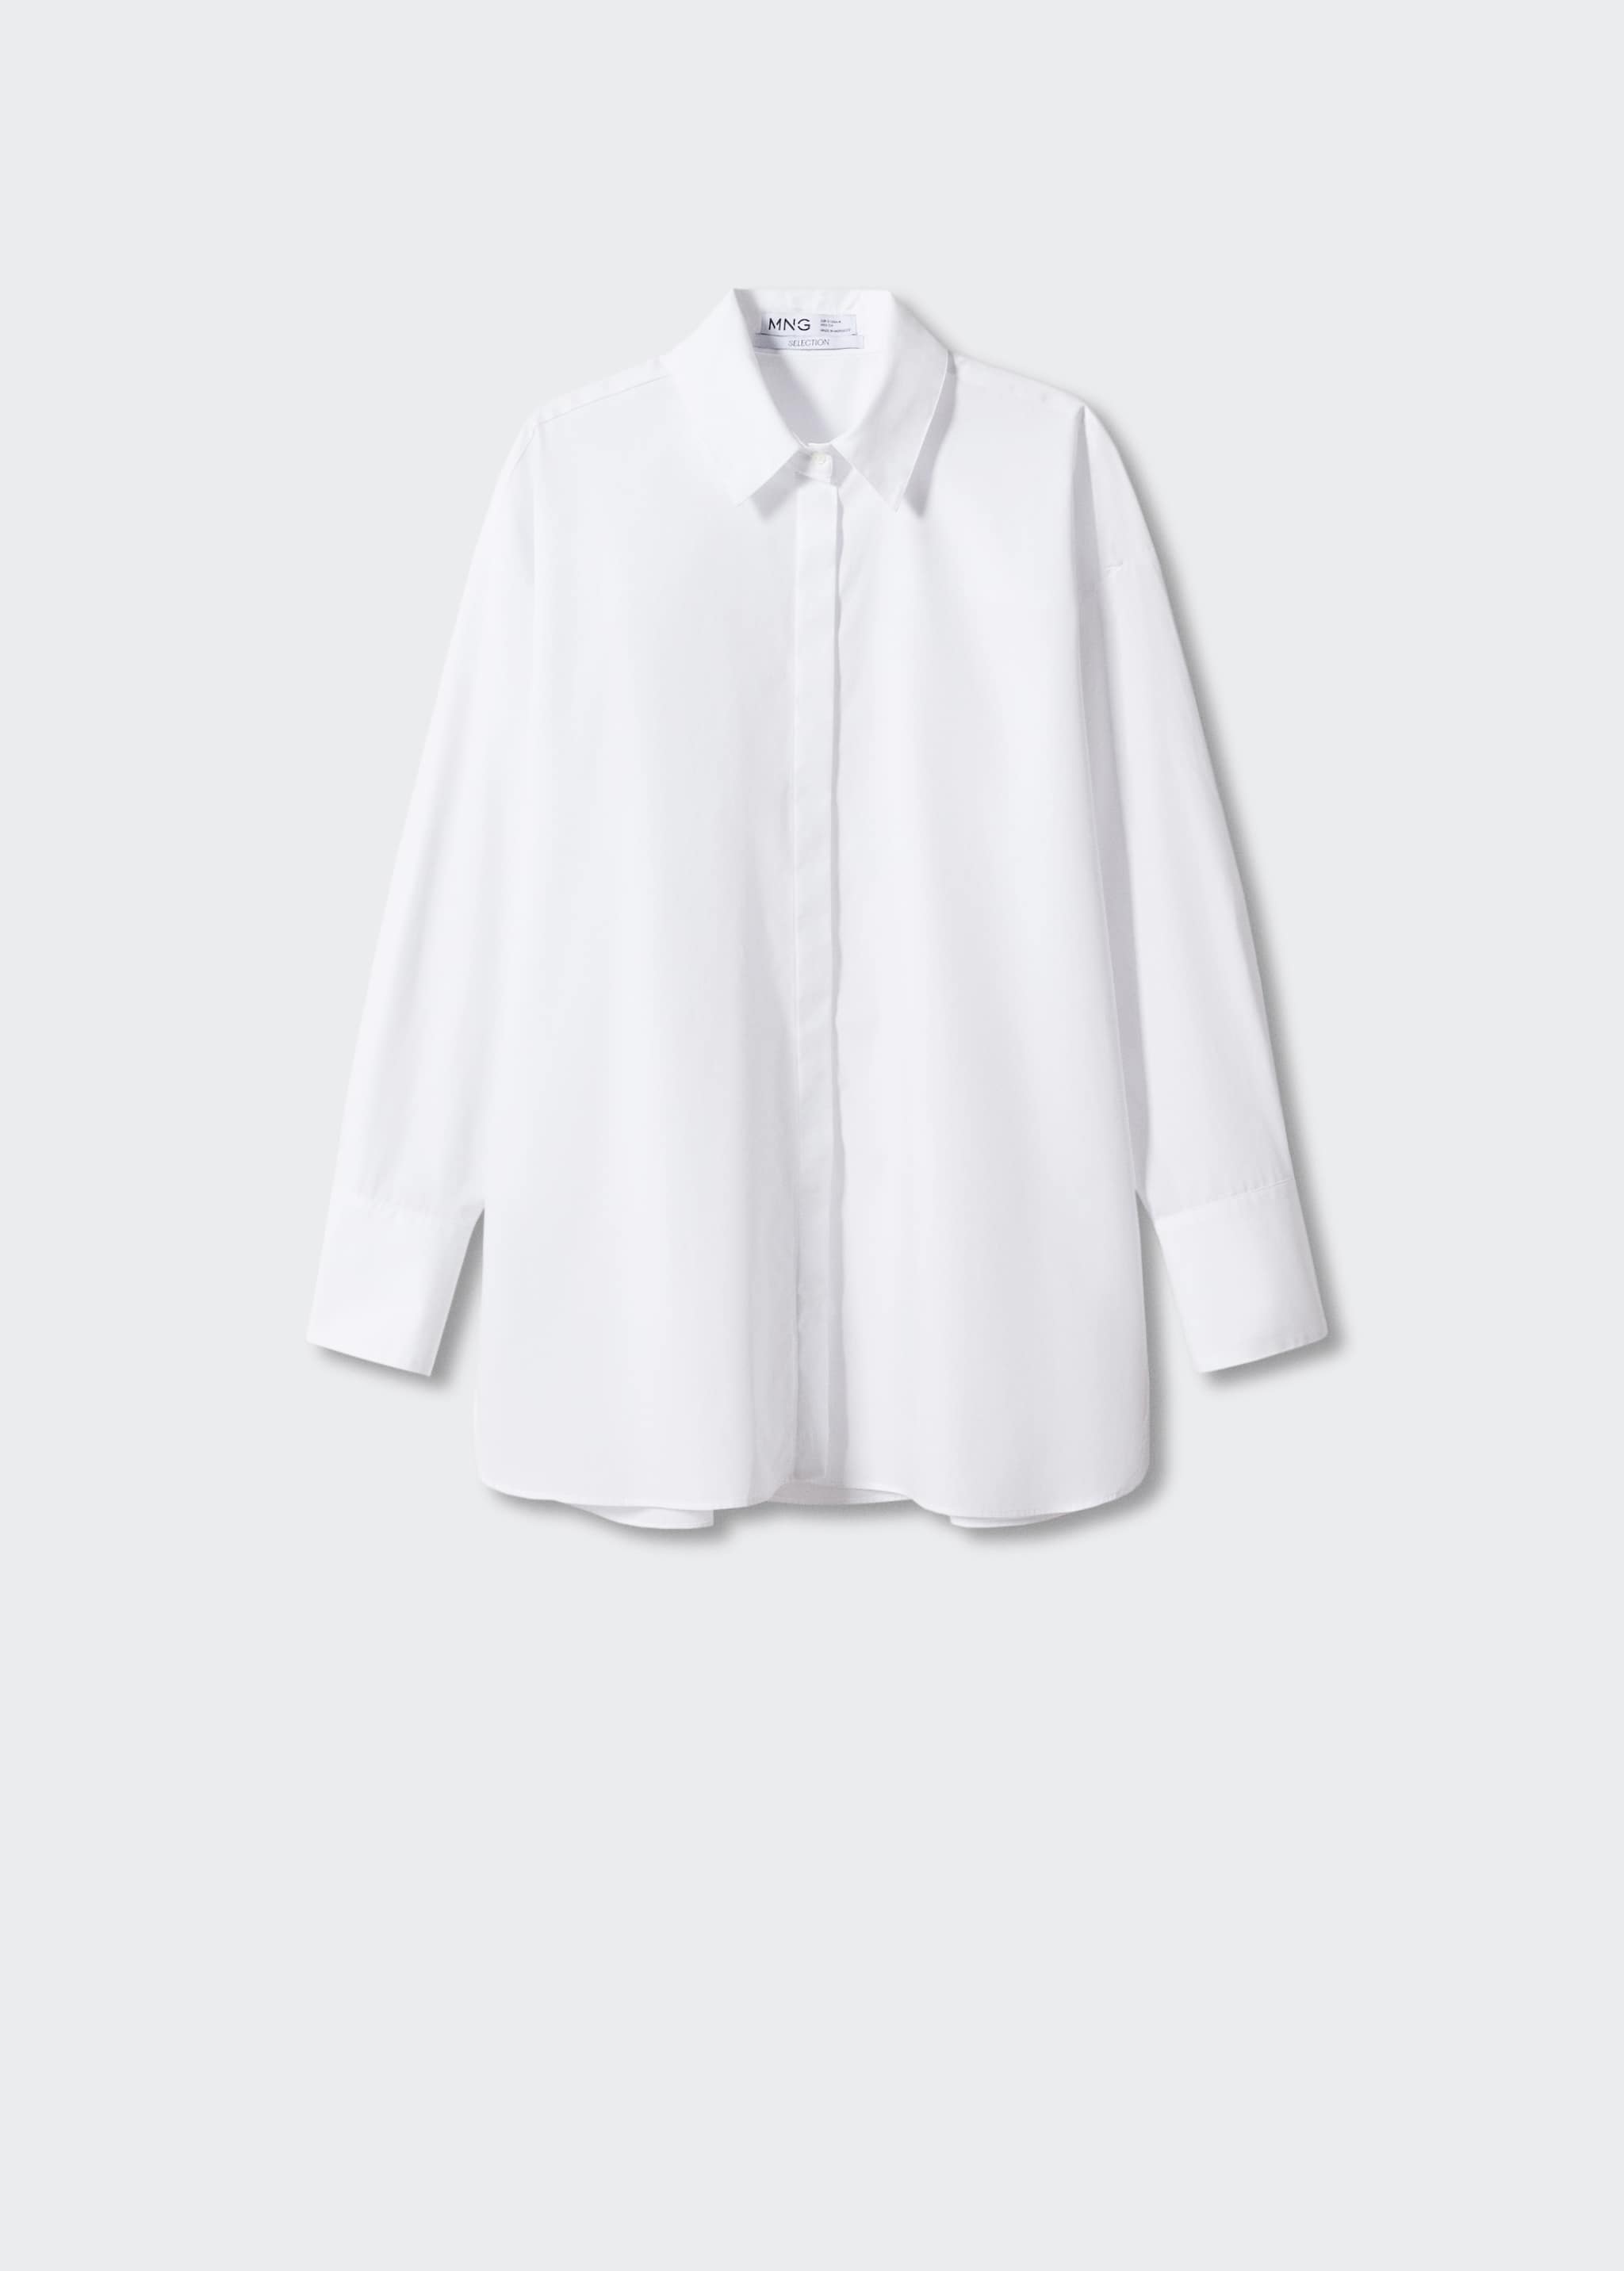 Camisa algodón oversize - Artículo sin modelo